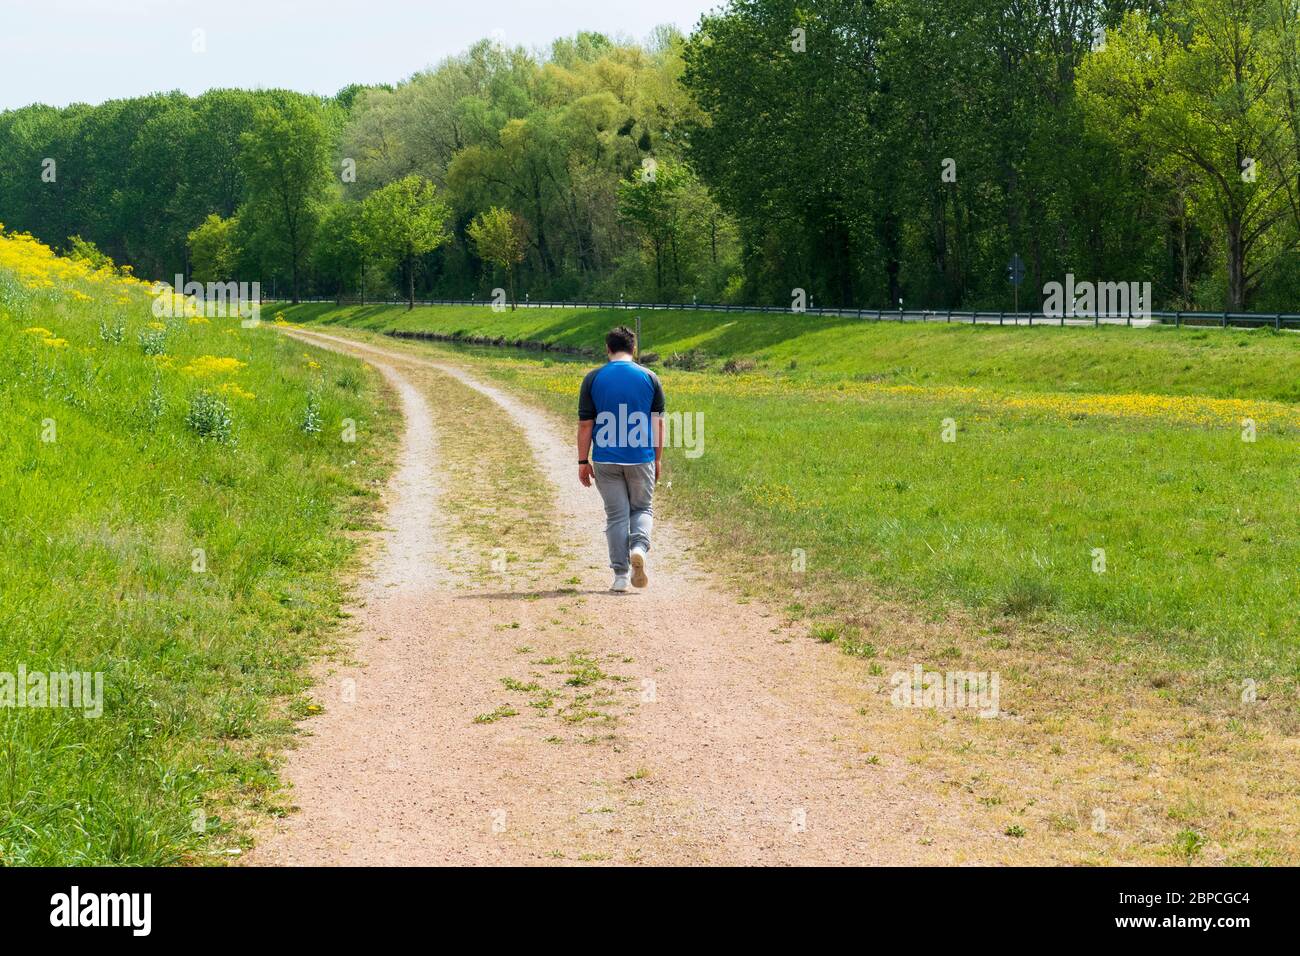 Junger Mann läuft traurig einen Weg entlang Stock Photo